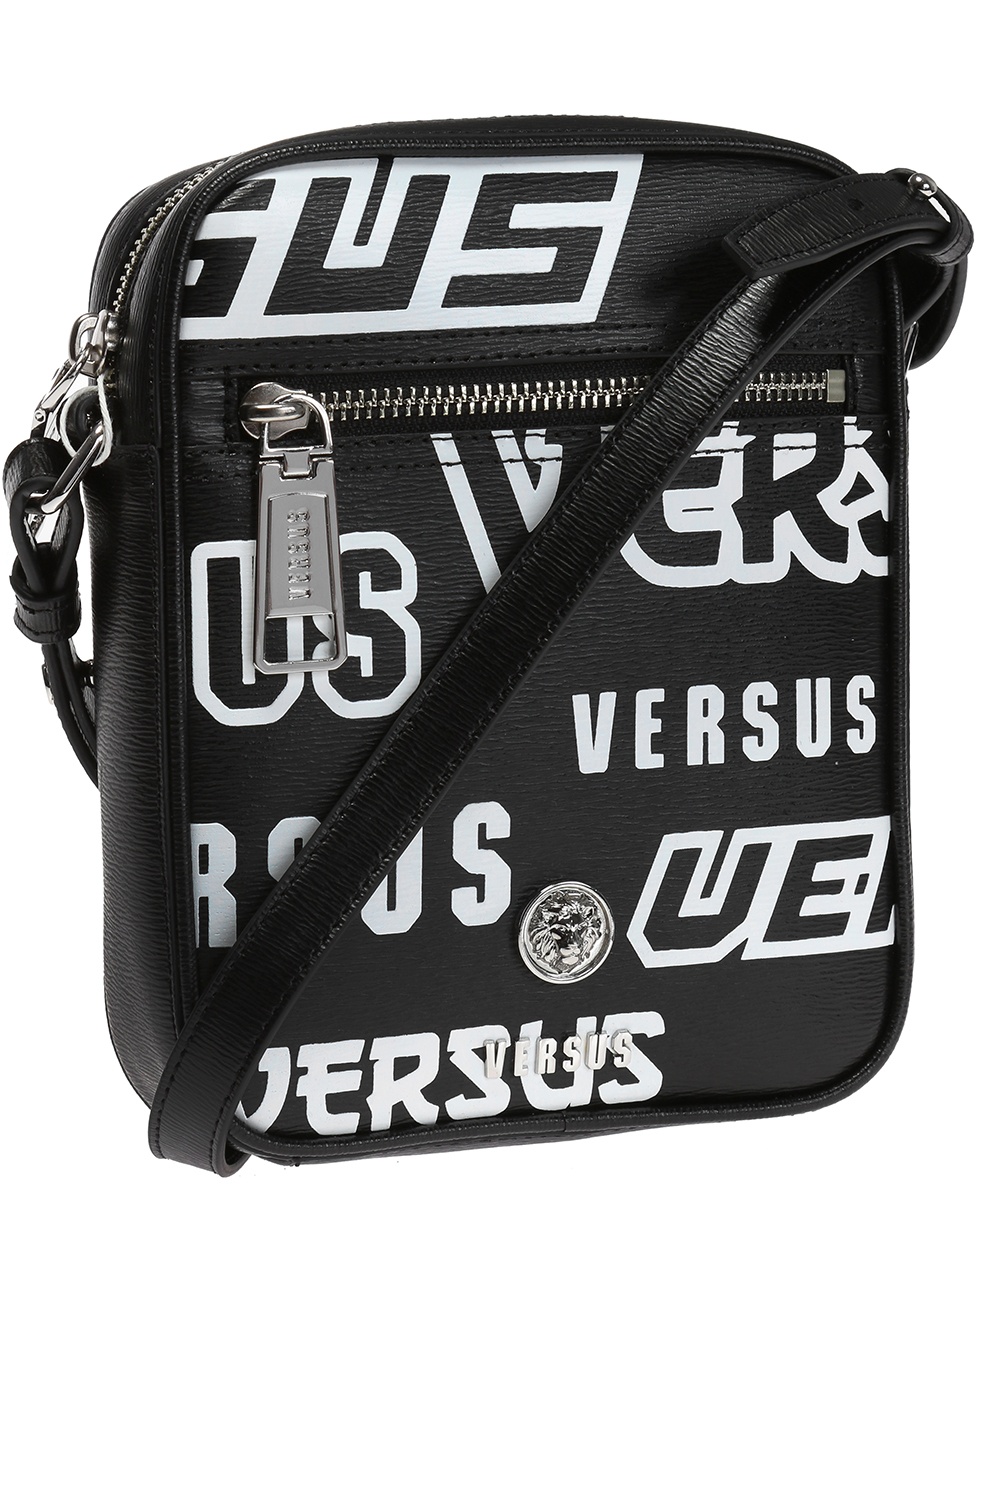 versus versace messenger bag